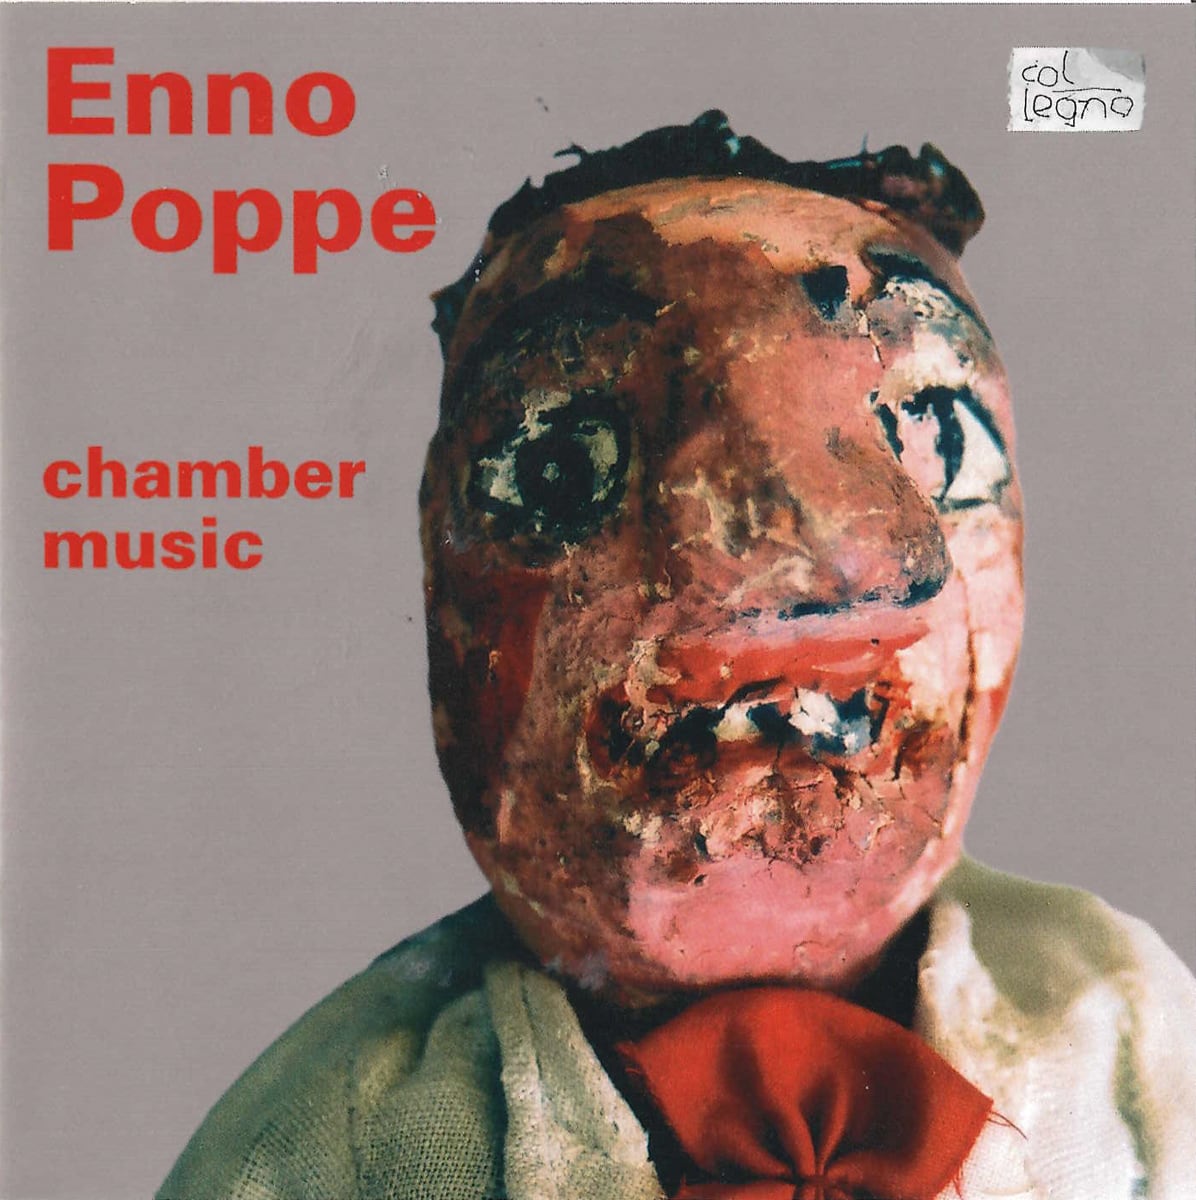 Enno Poppe / chamber music